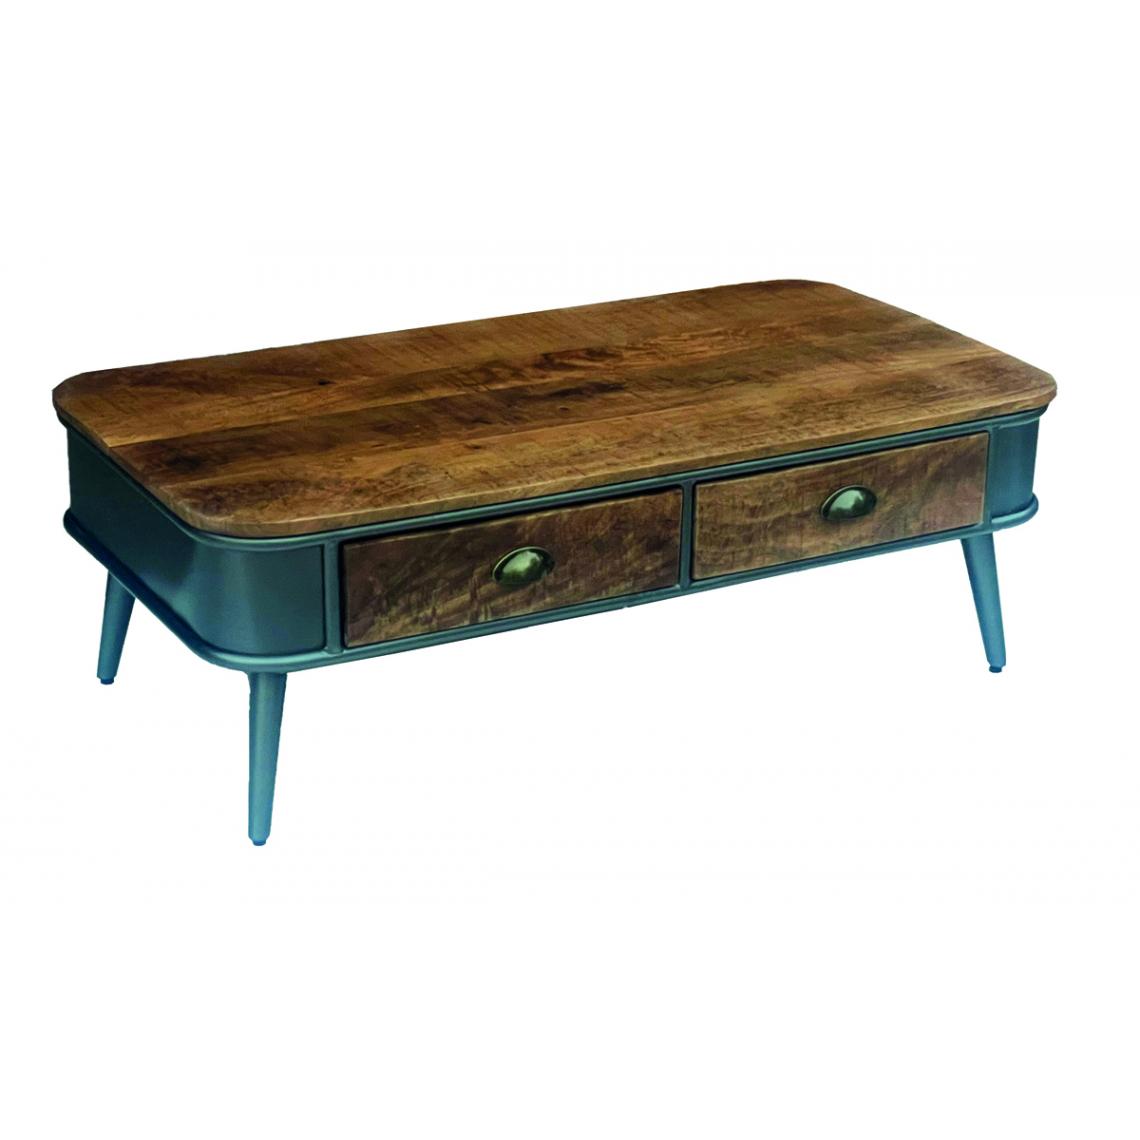 Pegane - Table basse en bois de palissandre et acier coloris naturel / noir - Longueur 115 x Profondeur 65 x hauteur 45 cm - Tables basses